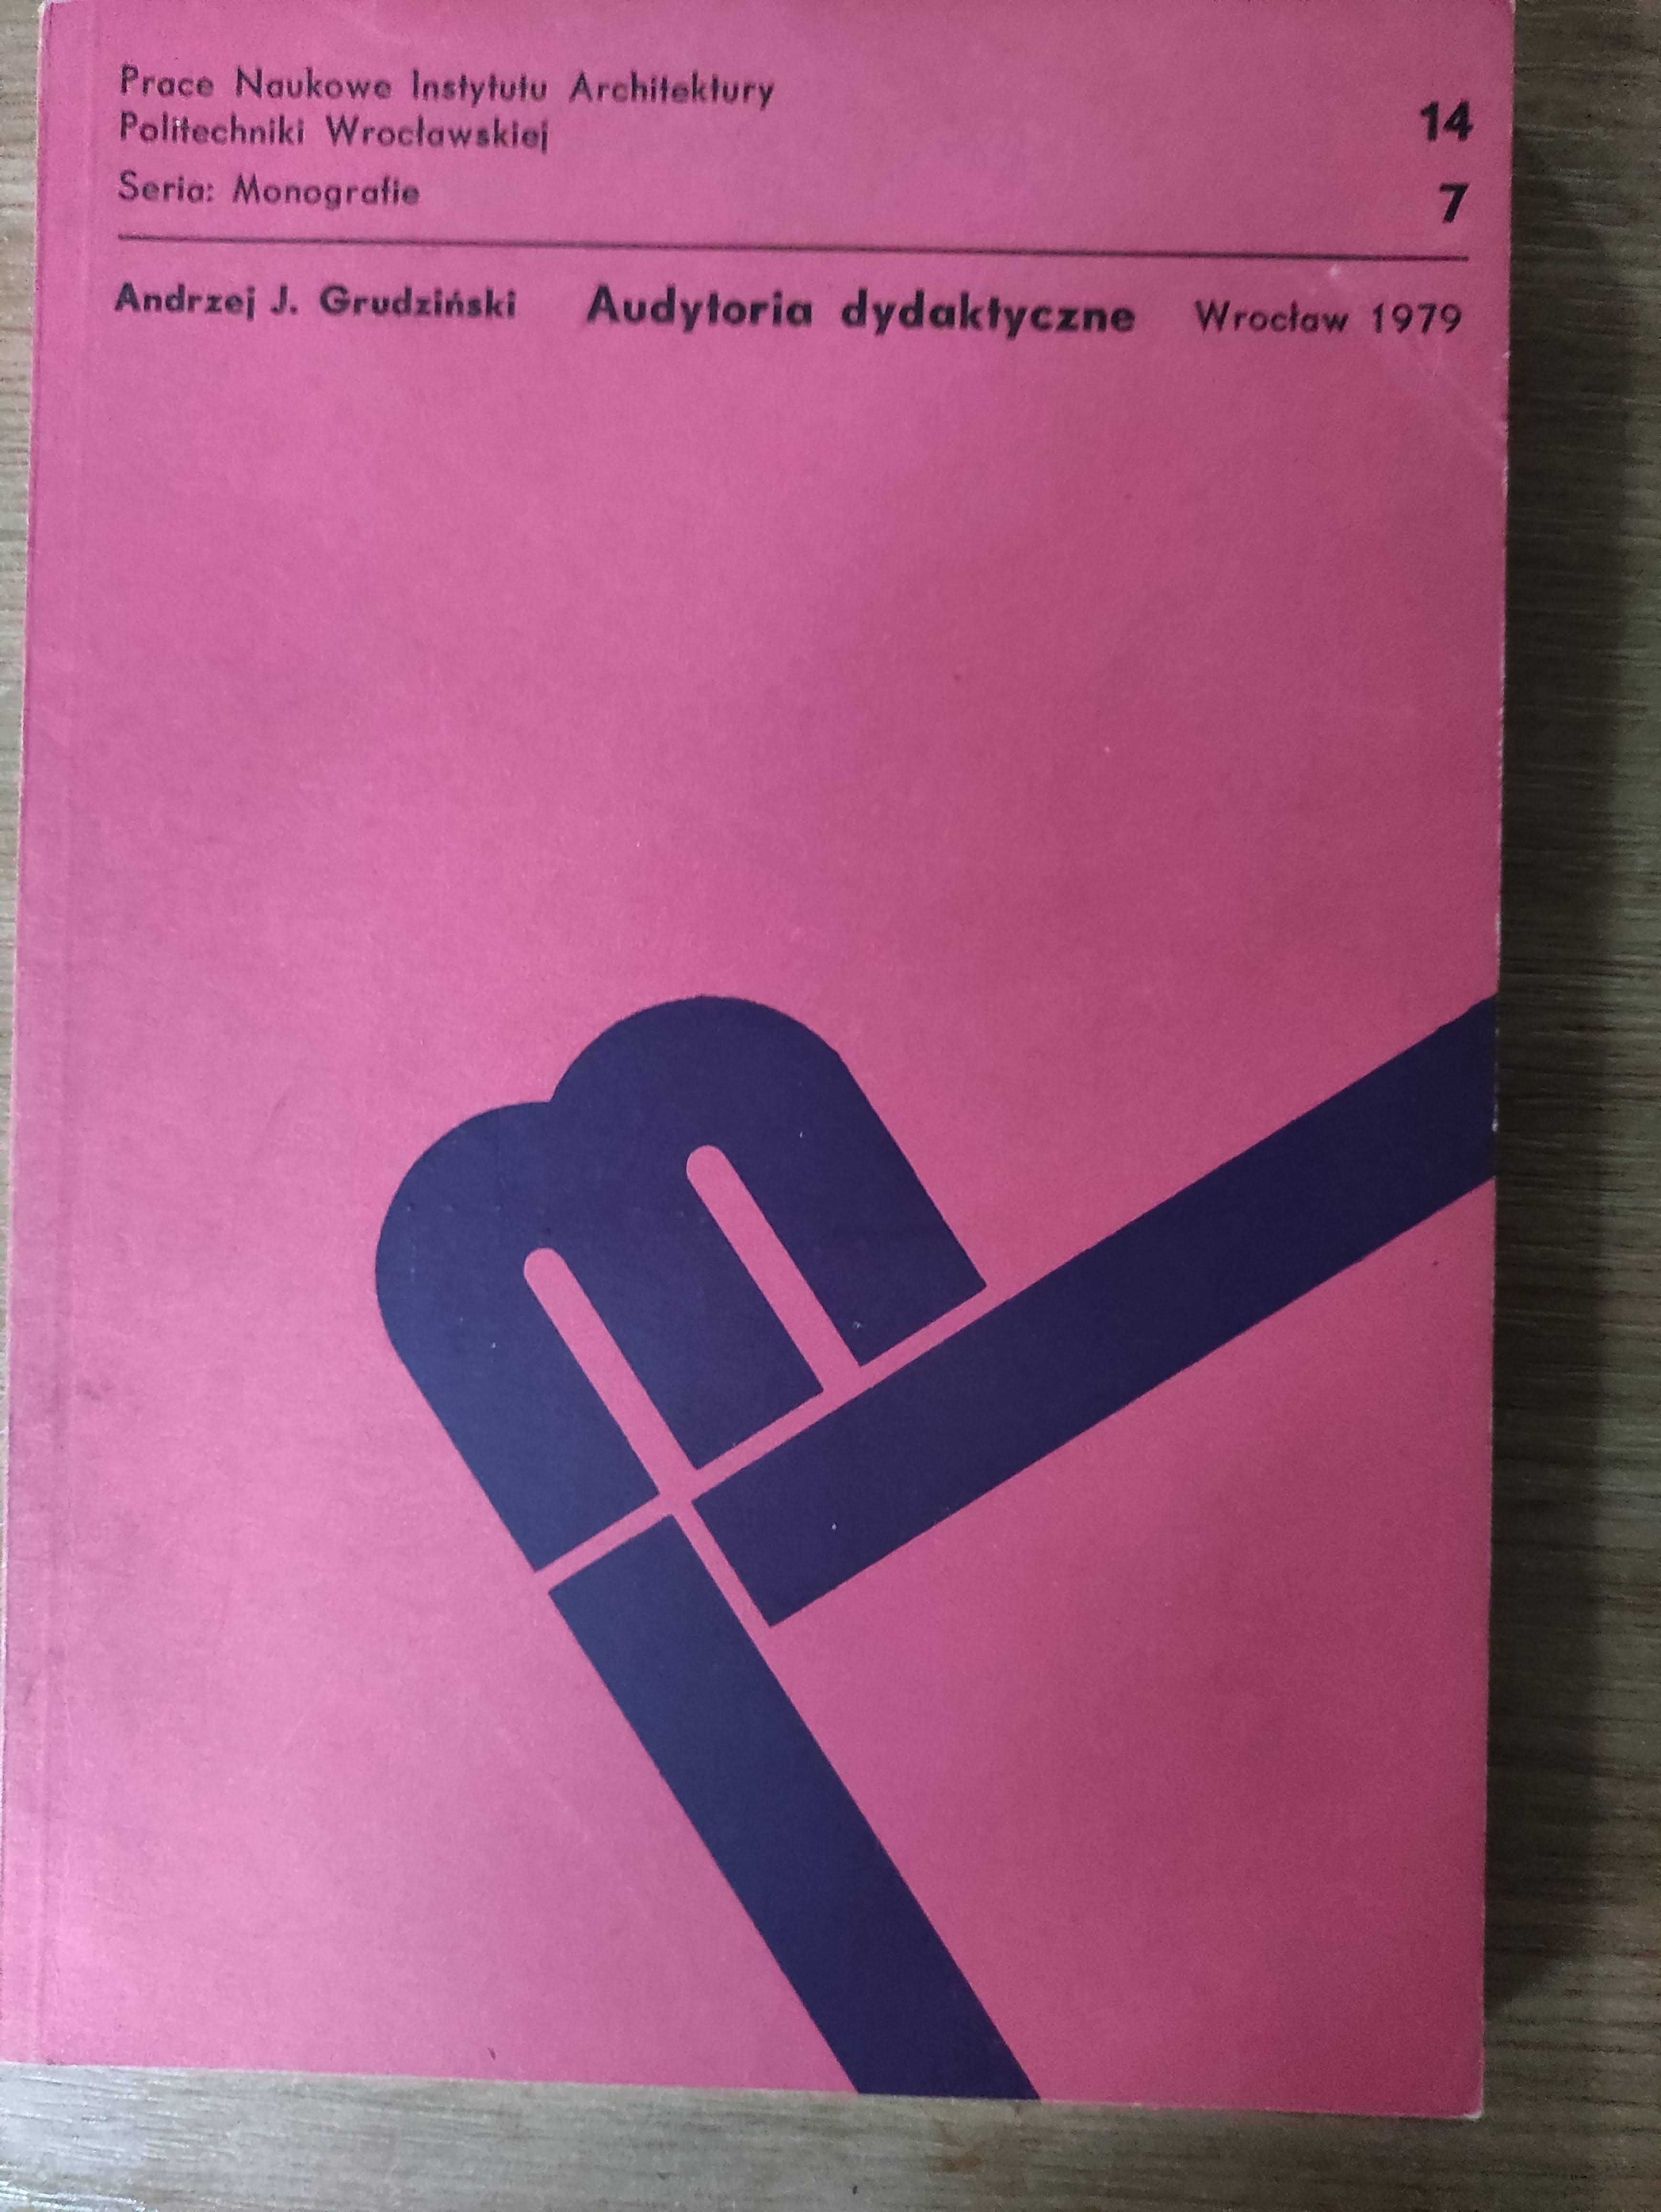 Audytoria dydaktyczne - Andrzej. J. Grudziński